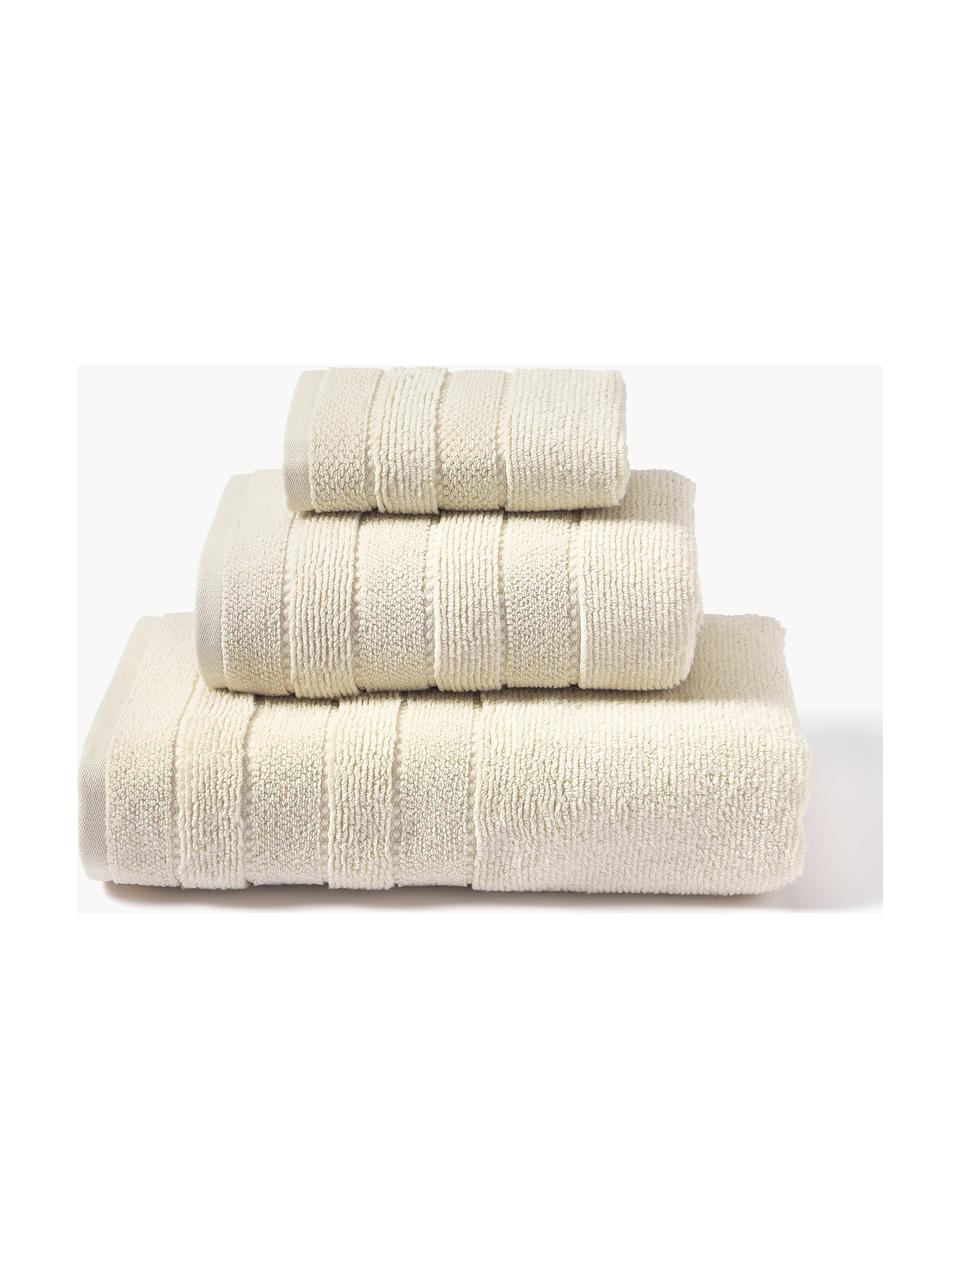 Lot de serviettes de bain avec bordure décorative Luxe, 3 élém., Blanc cassé, 3 éléments (1 serviette invité, 1 serviette de toilette et 1 drap de bain)